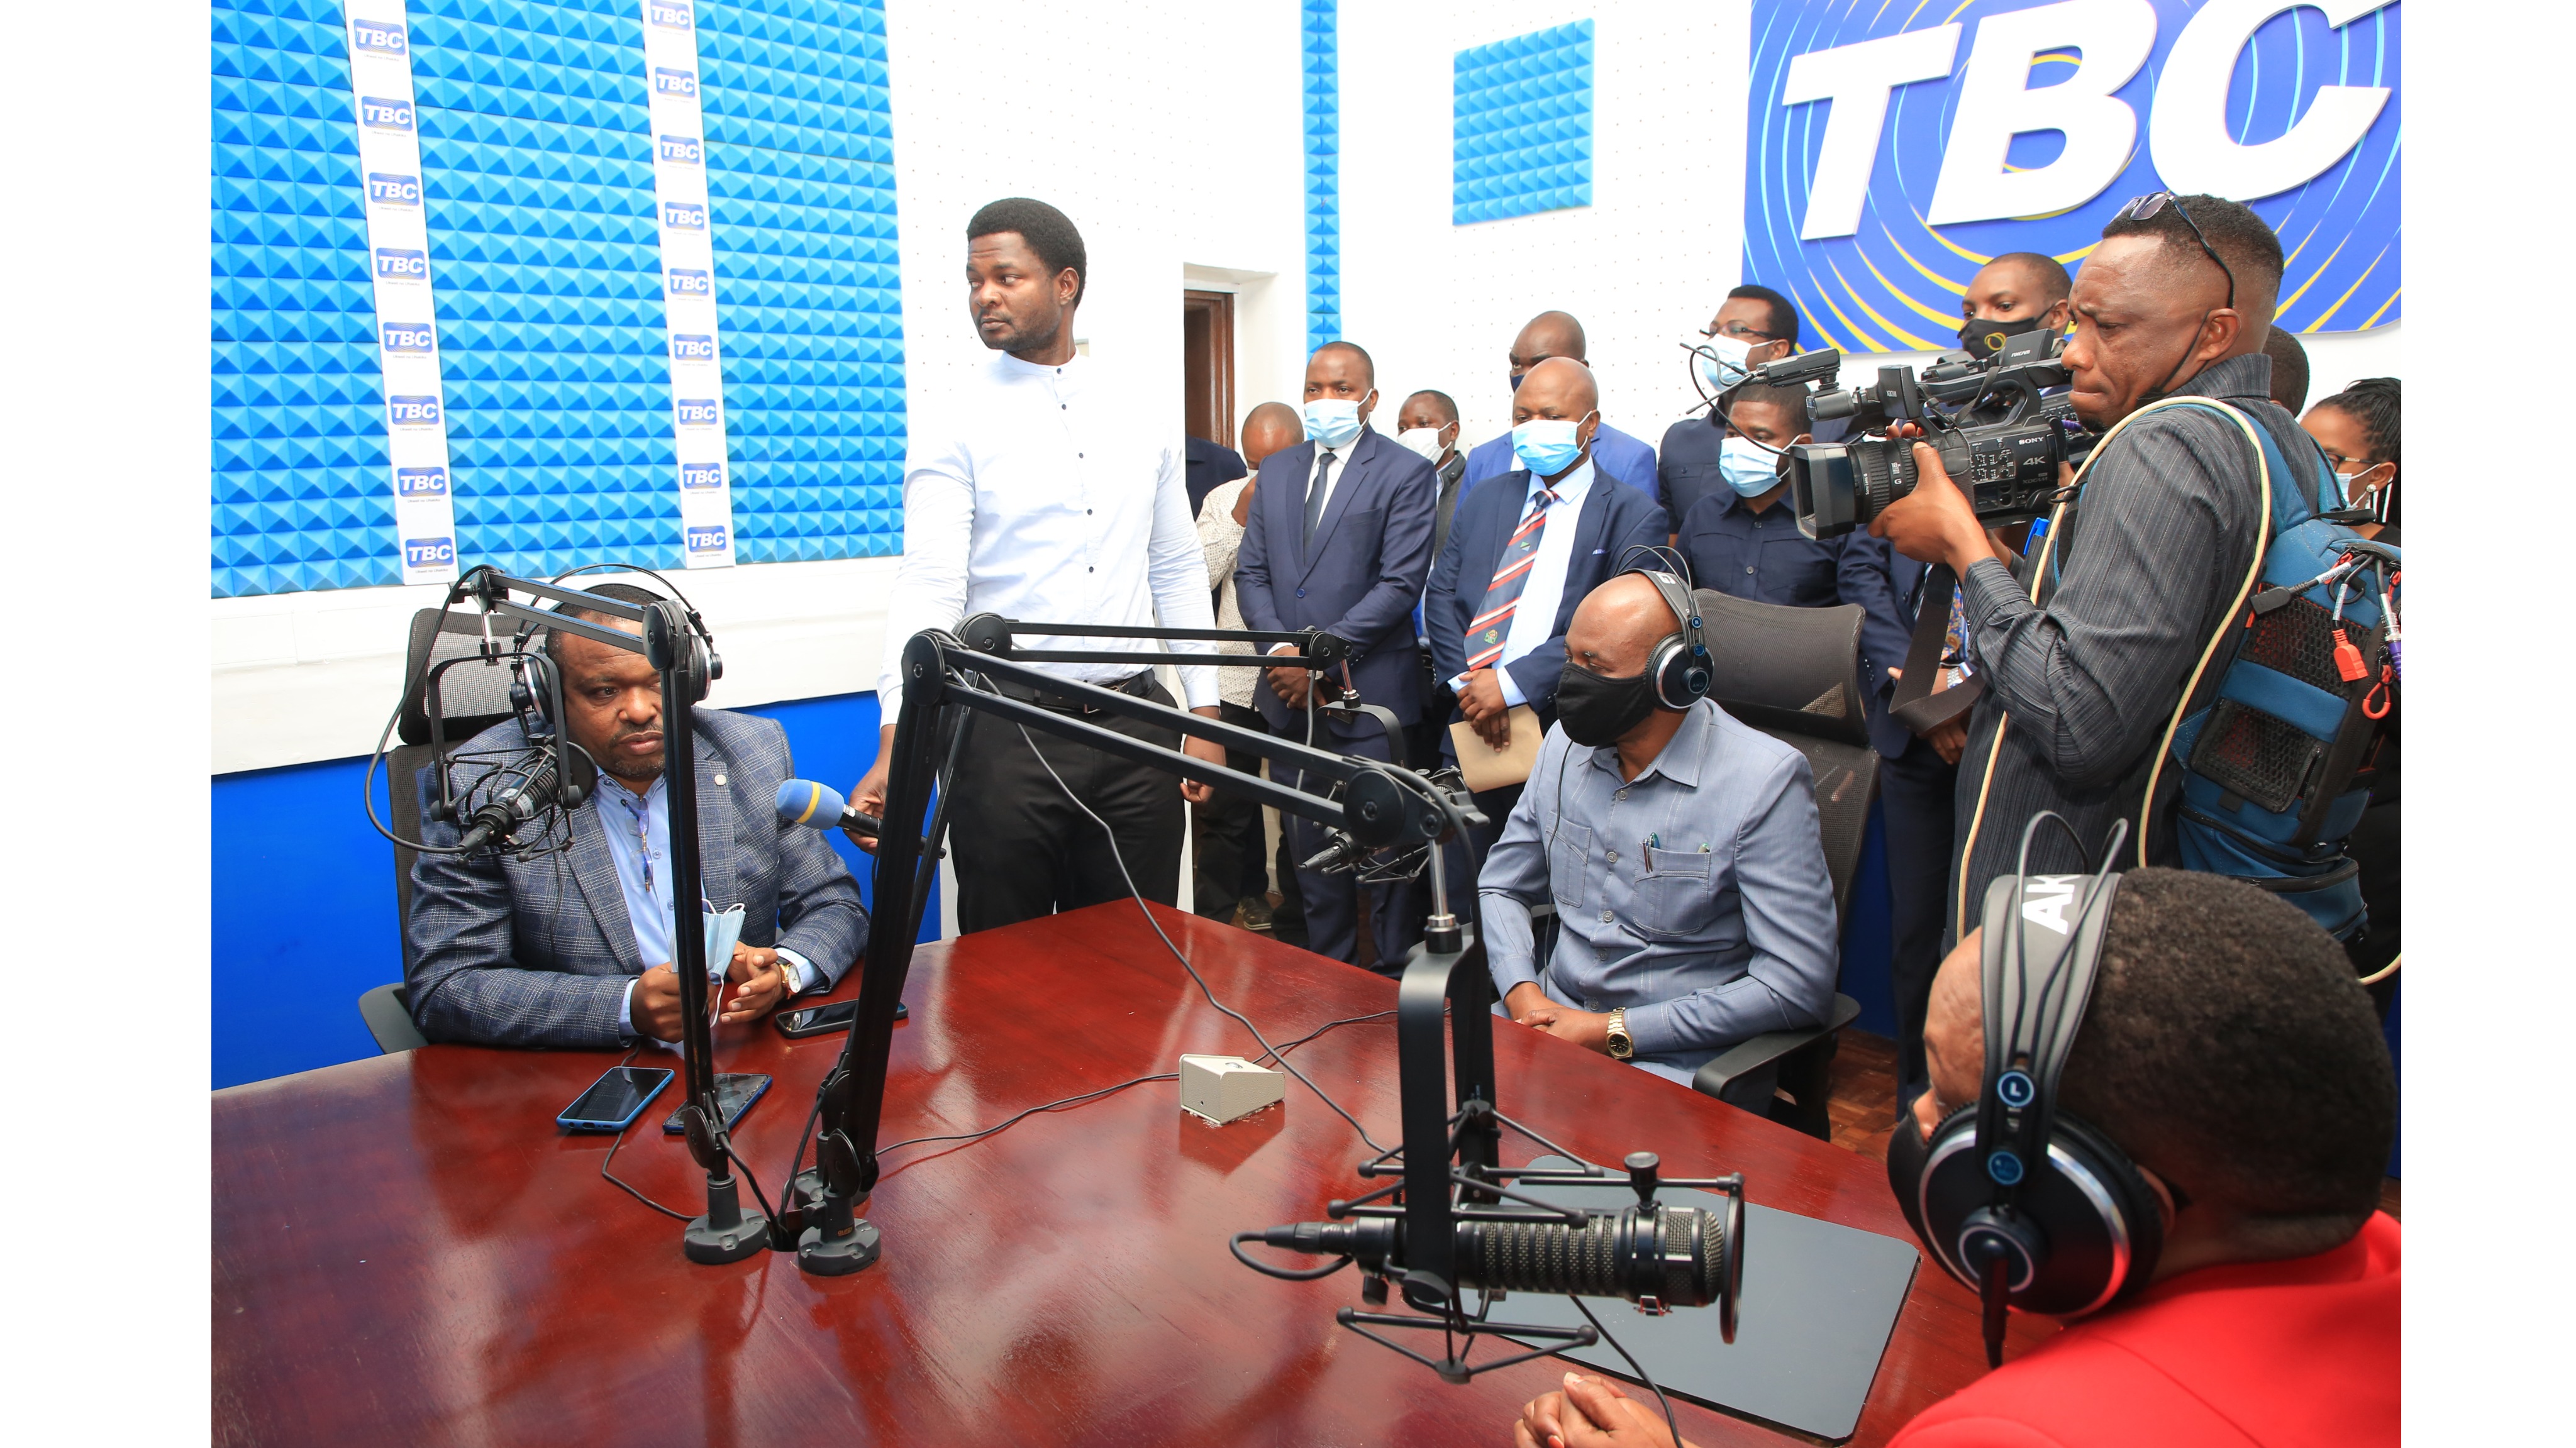 Serikali yadhamiria kumaliza tatizo la usikivu wa radio ifikapo 2025